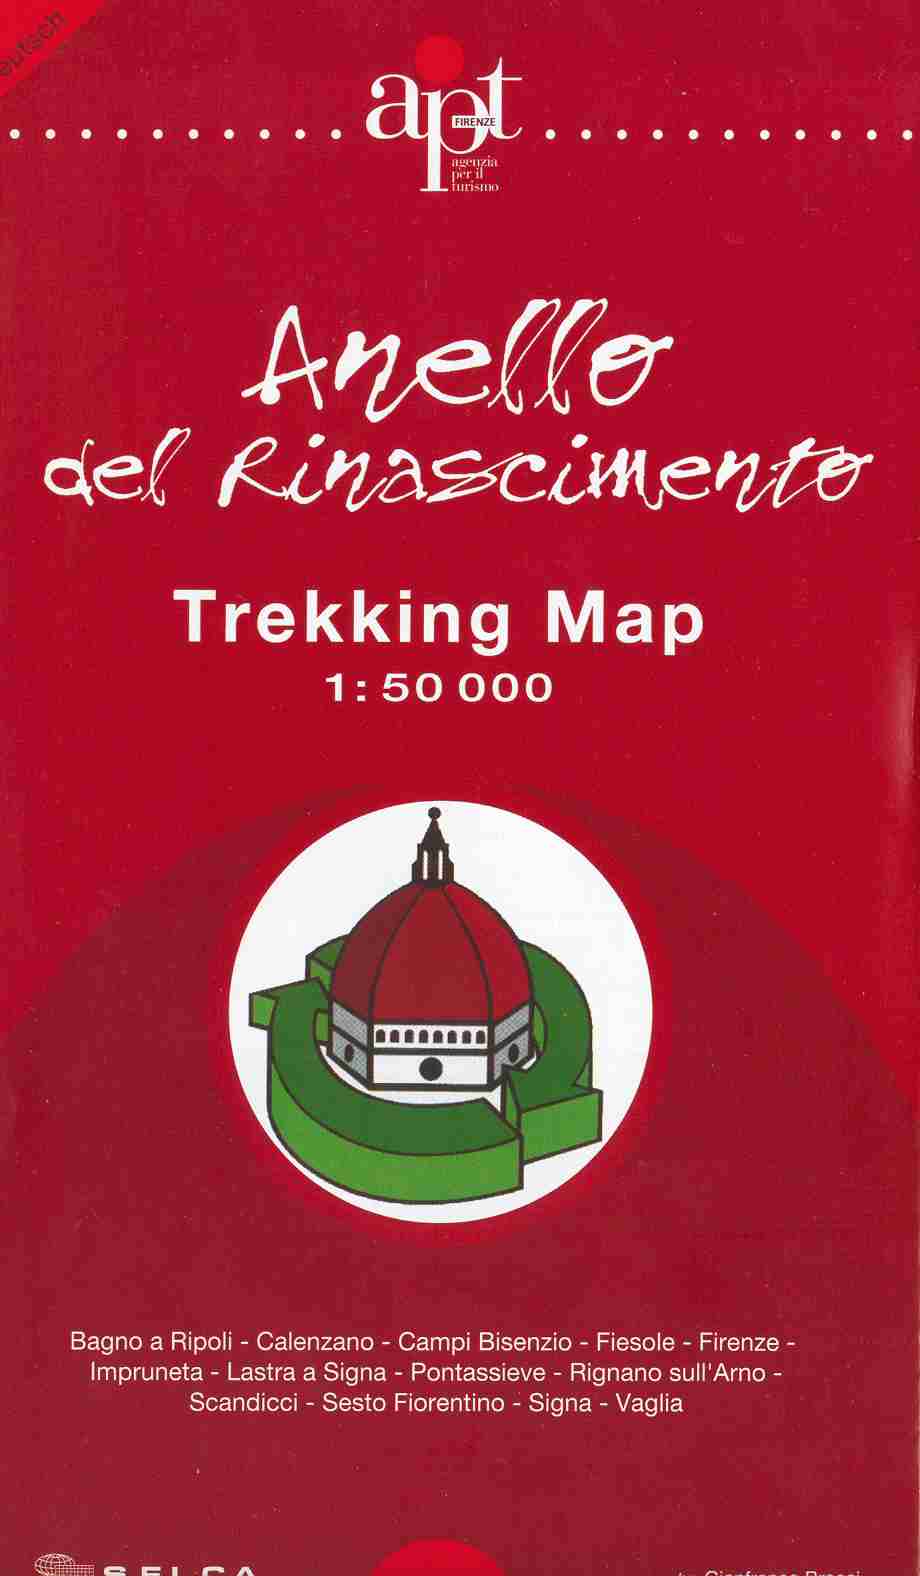 La copertina della Trekking Map dell'Anello del Rinascimento